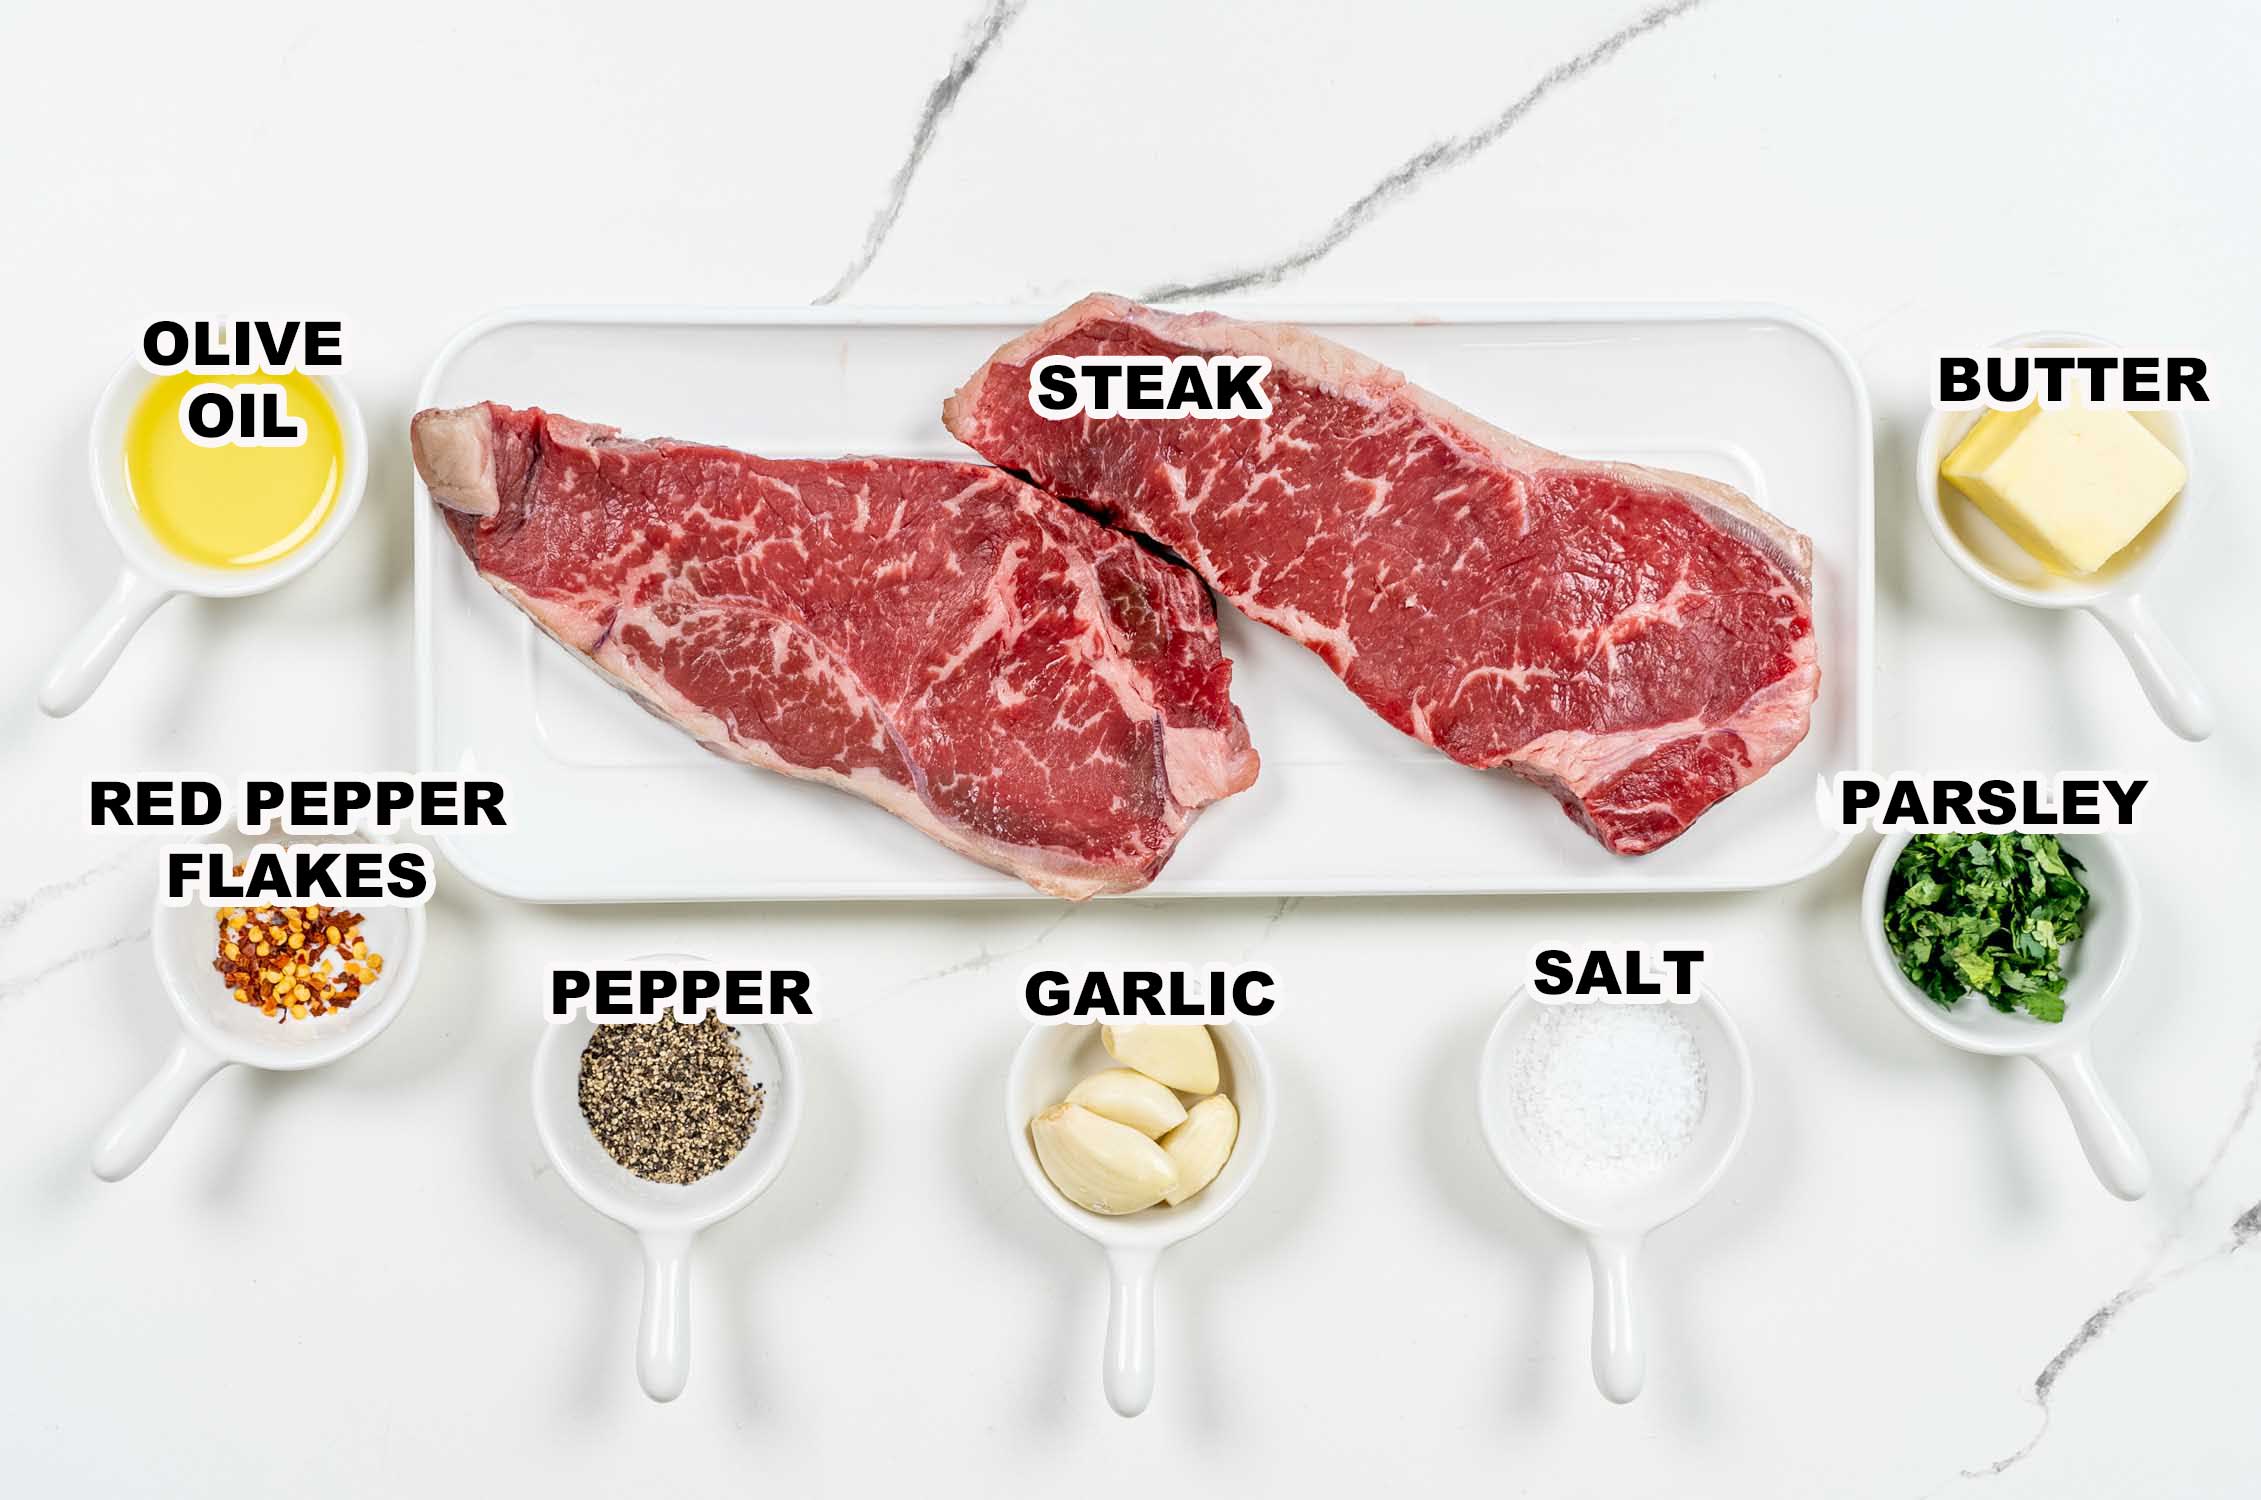 ingredients needed to make garlic butter steak bites.